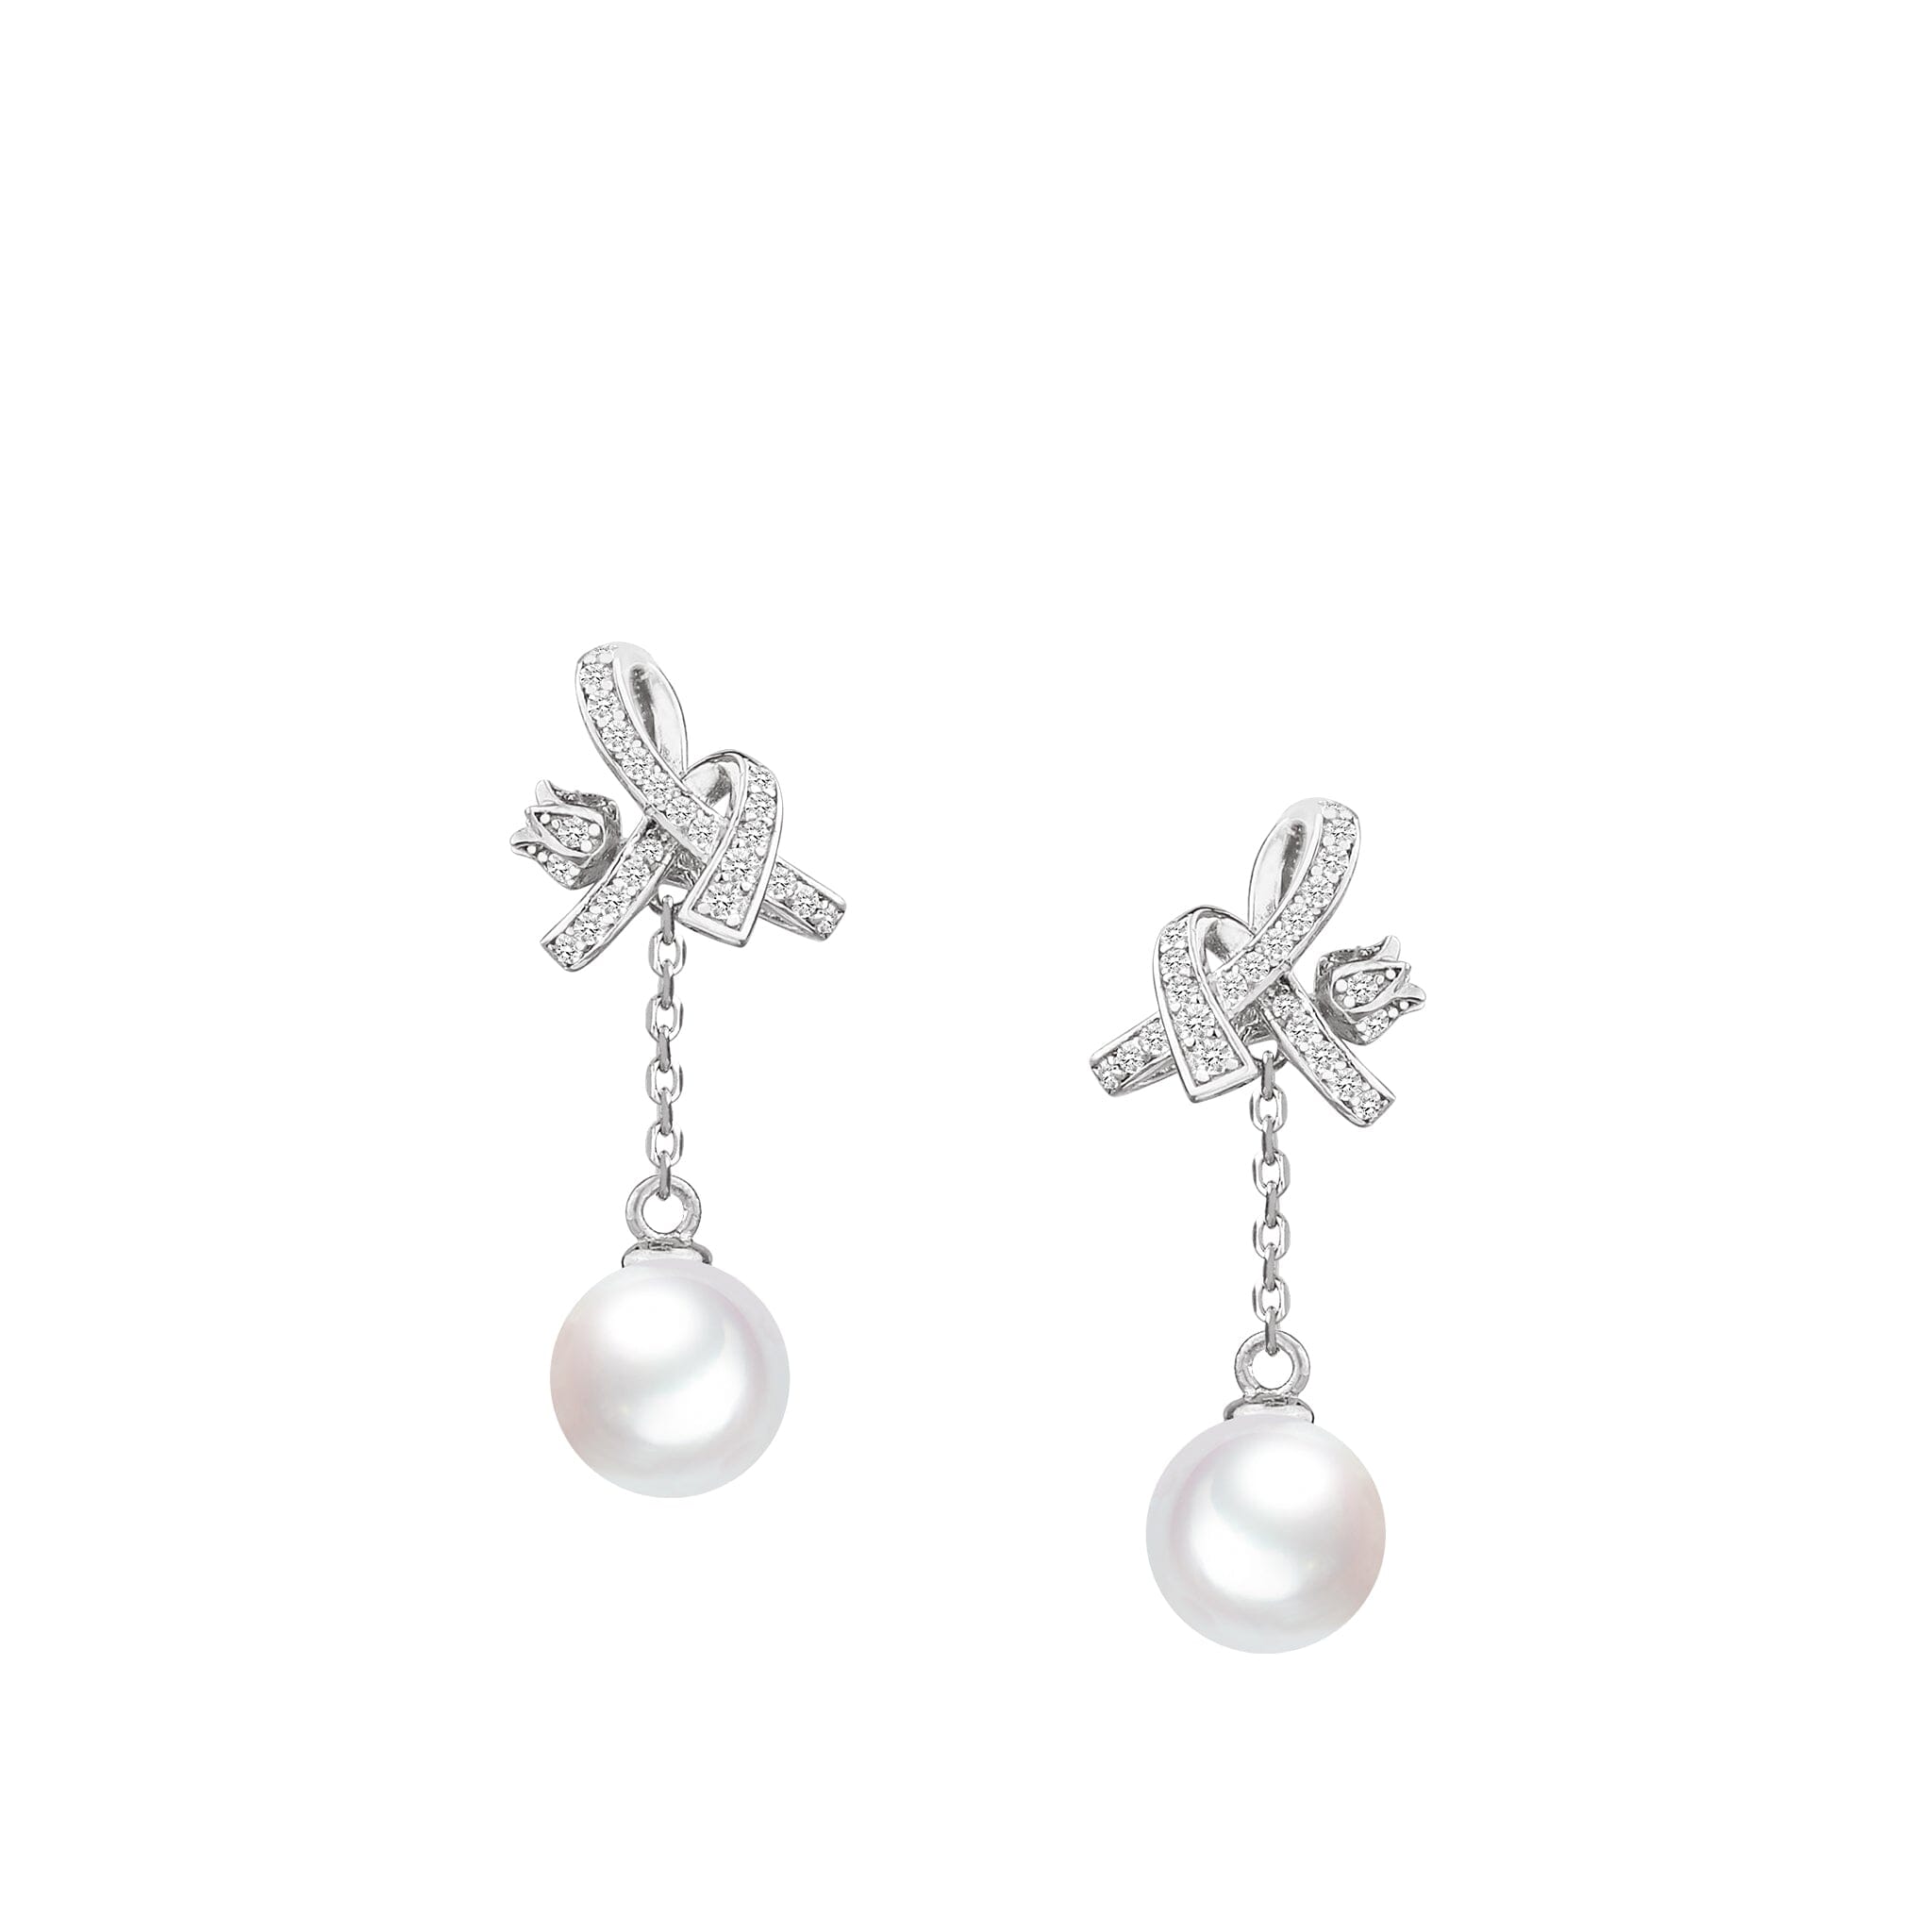 Women's Silver Drop Earrings with White Pearl Earrings AWNL Silver 